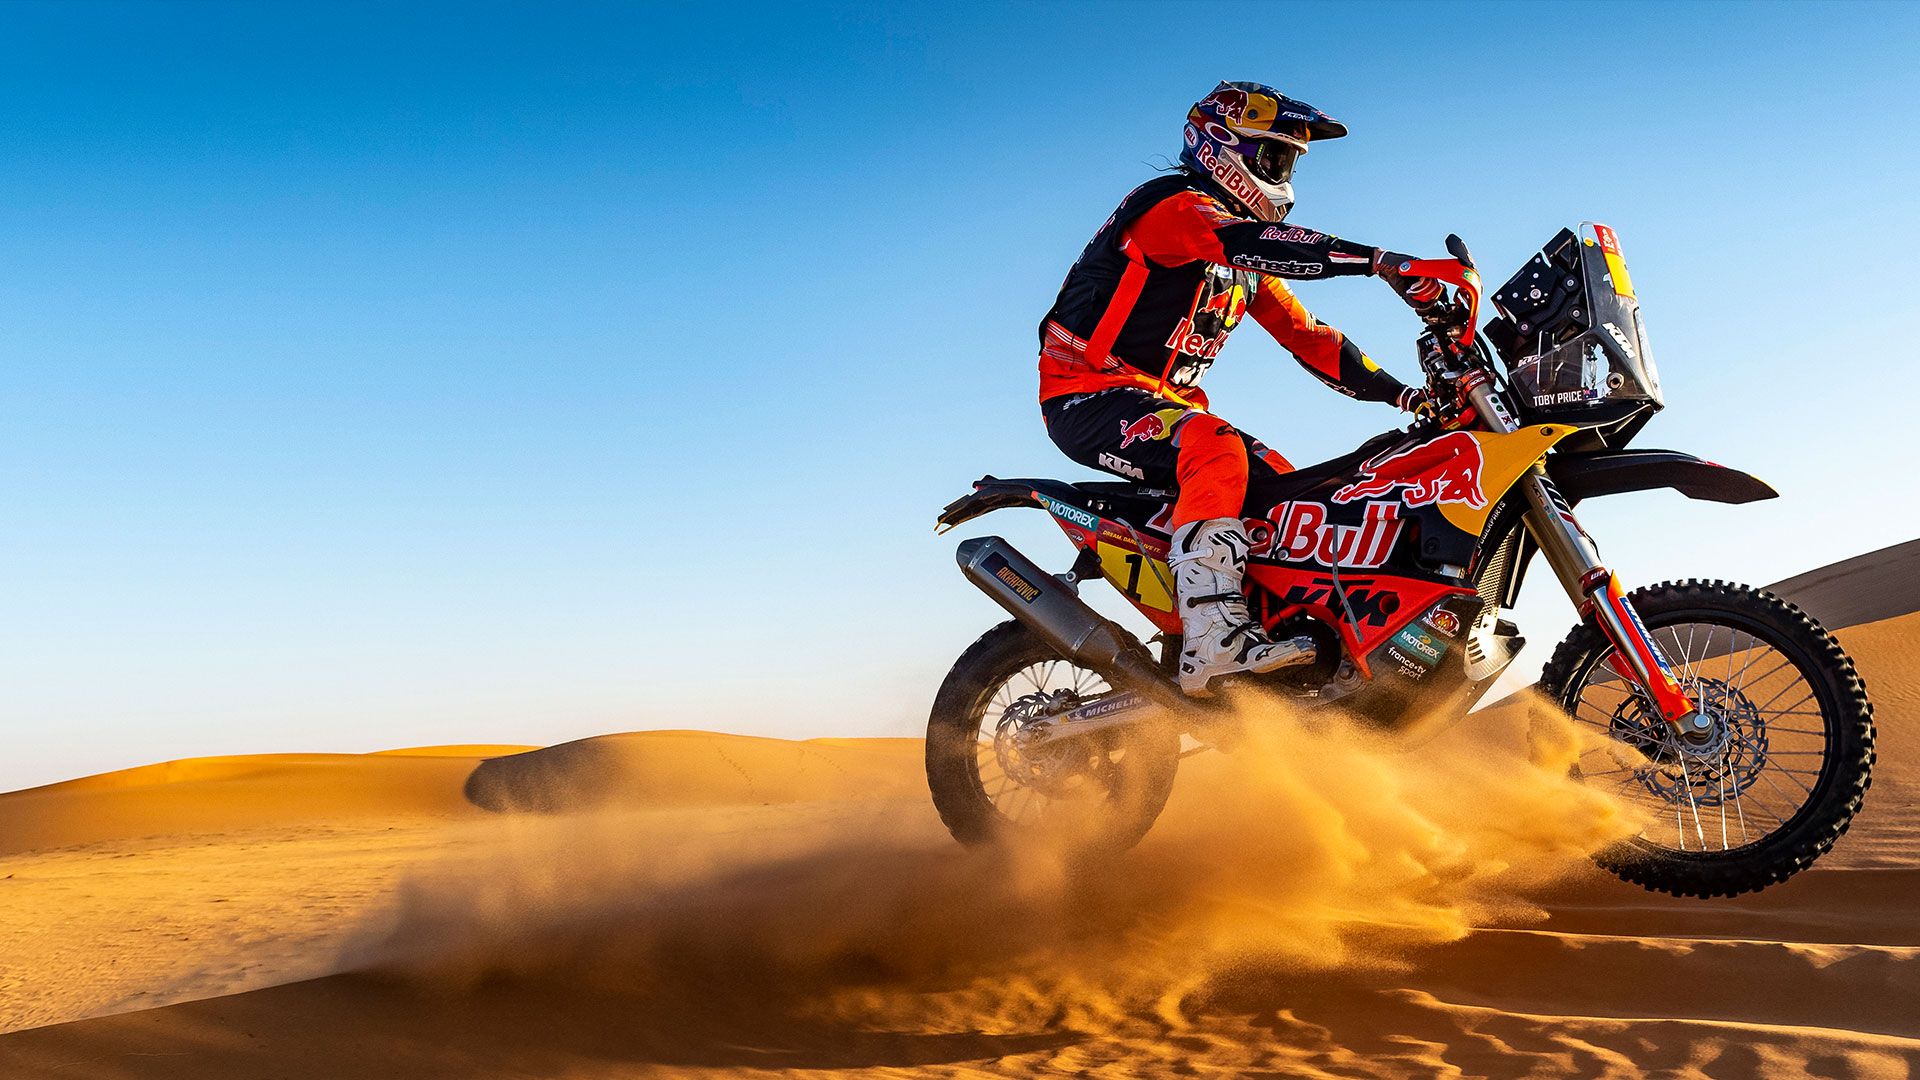 Rally rider riding in desert